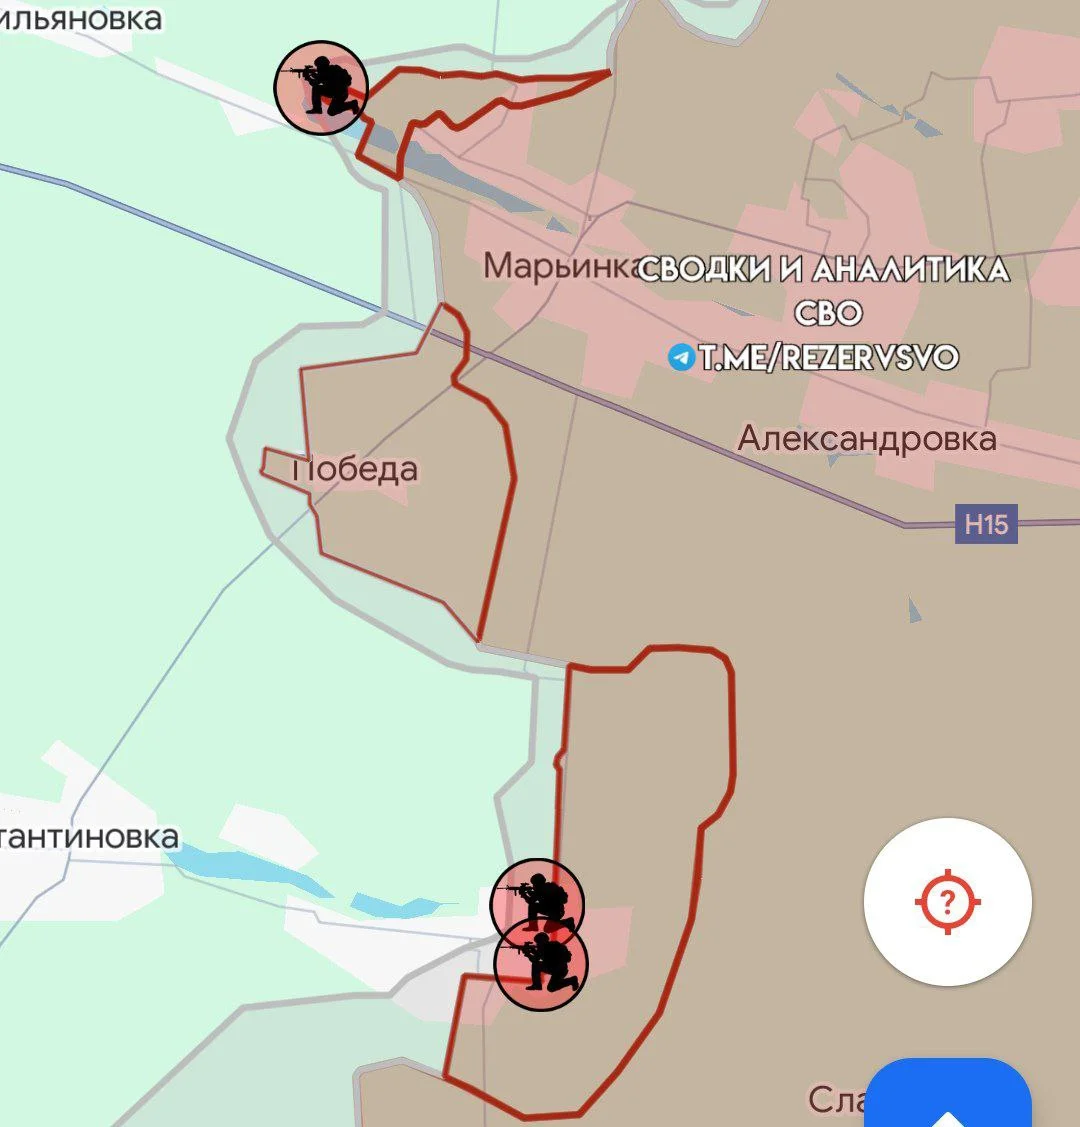 Кураховское направление. Карта боевых действий.